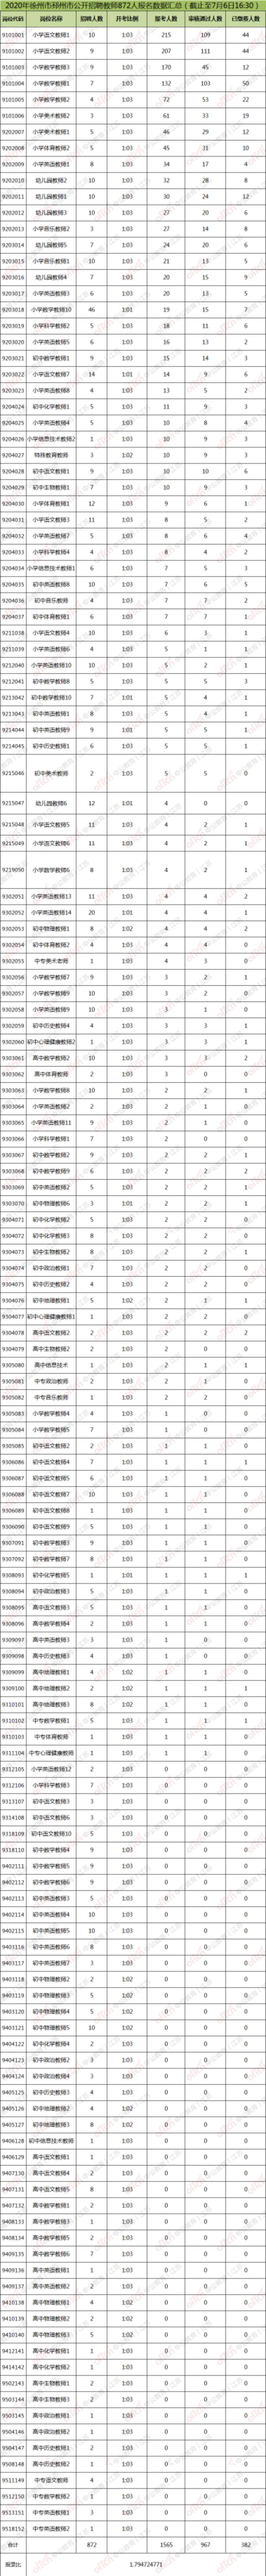 徐州招聘编制教师4925人首日报名数据出炉